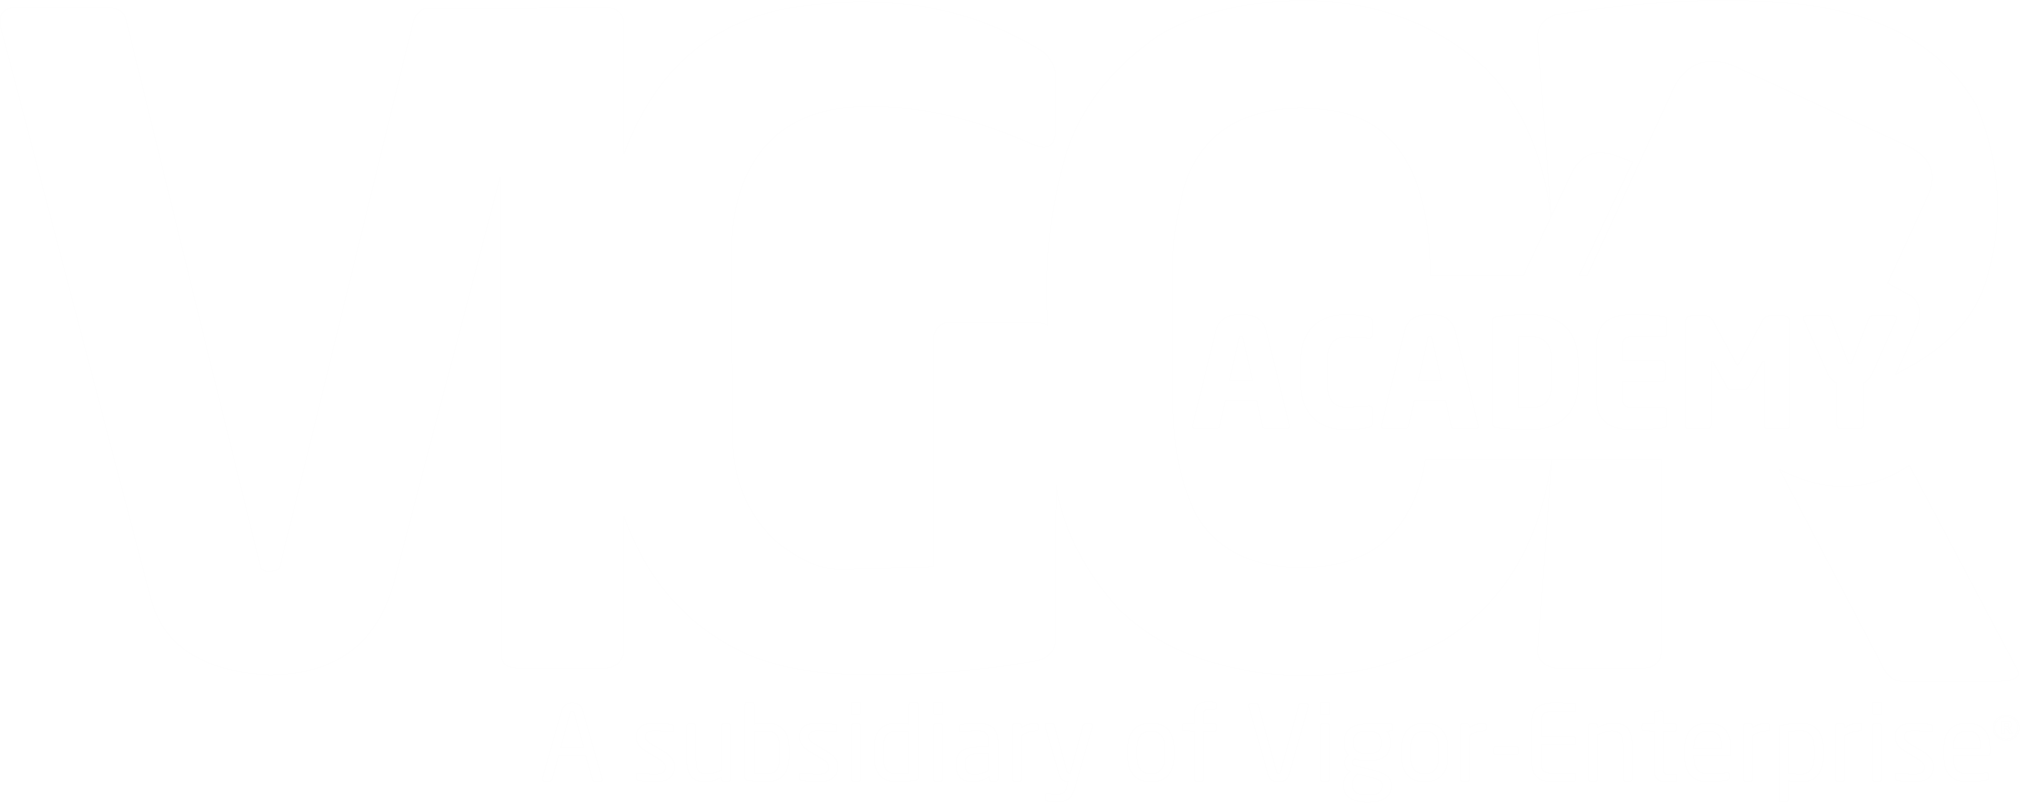 Vigor Academy